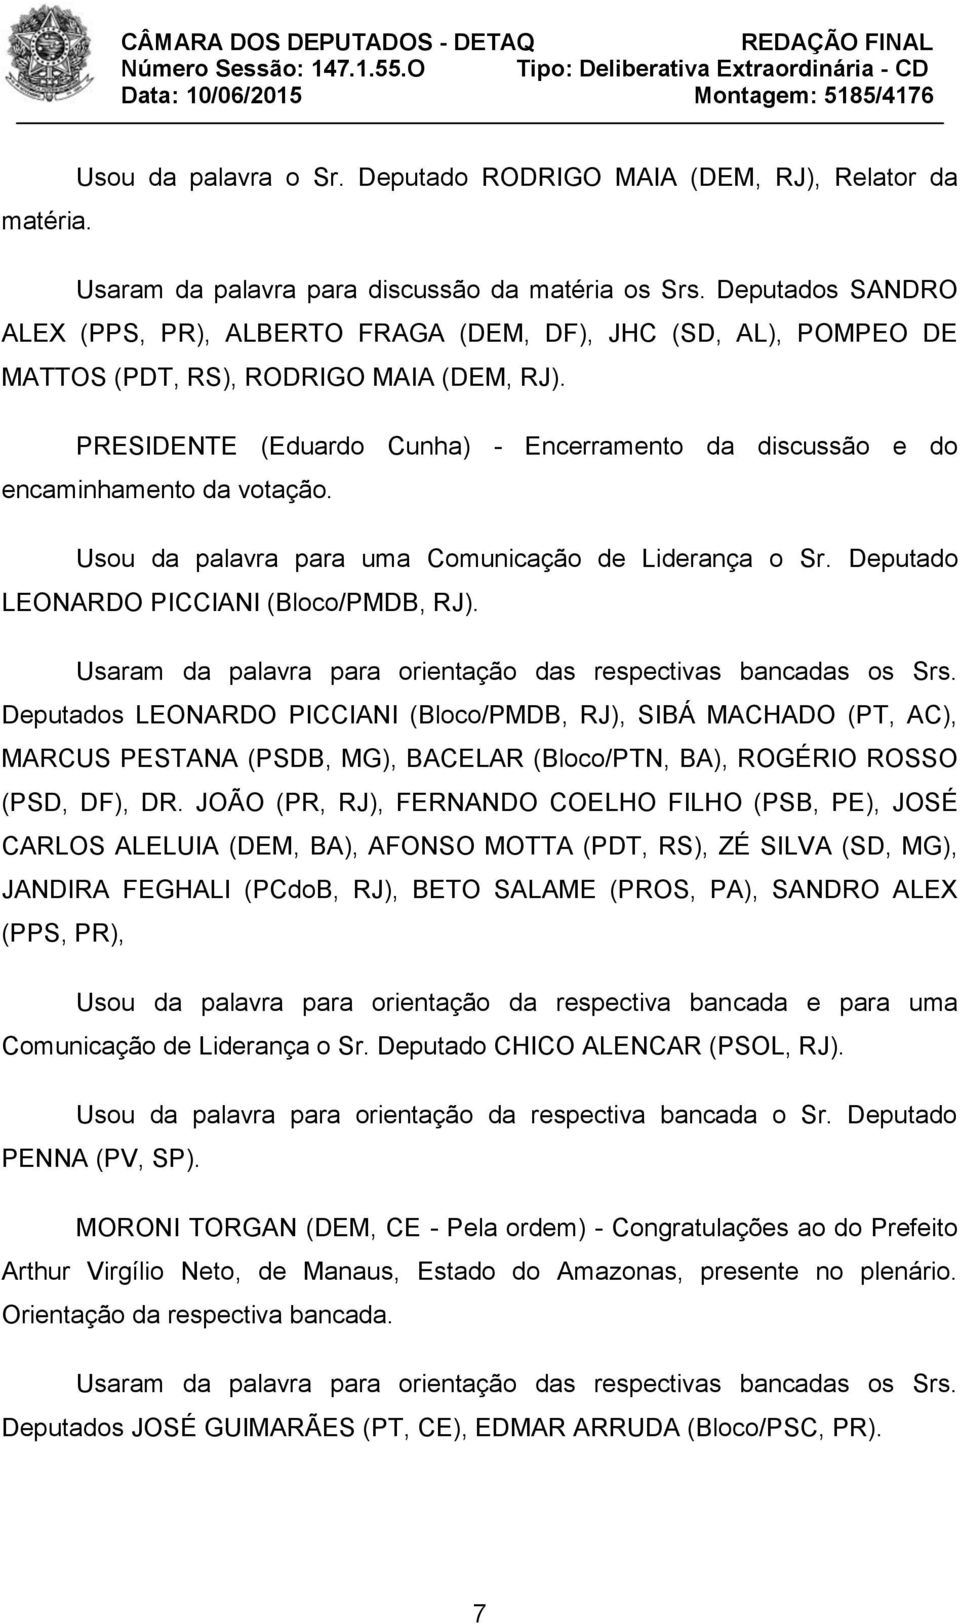 PRESIDENTE (Eduardo Cunha) - Encerramento da discussão e do encaminhamento da votação. Usou da palavra para uma Comunicação de Liderança o Sr. Deputado LEONARDO PICCIANI (Bloco/PMDB, RJ).